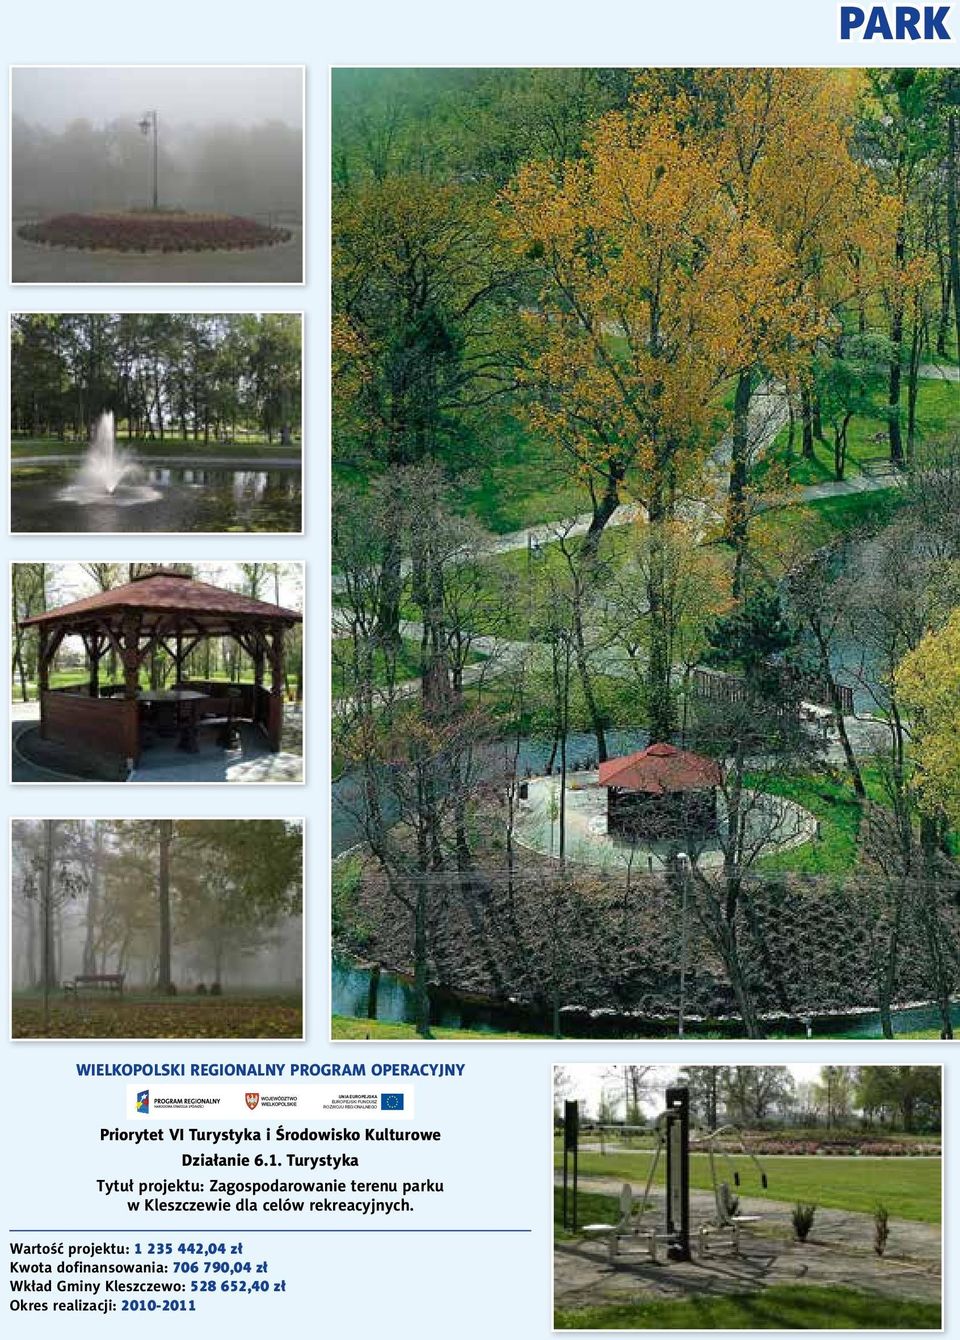 Turystyka Tytuł projektu: Zagospodarowanie terenu parku w Kleszczewie dla celów rekreacyjnych.